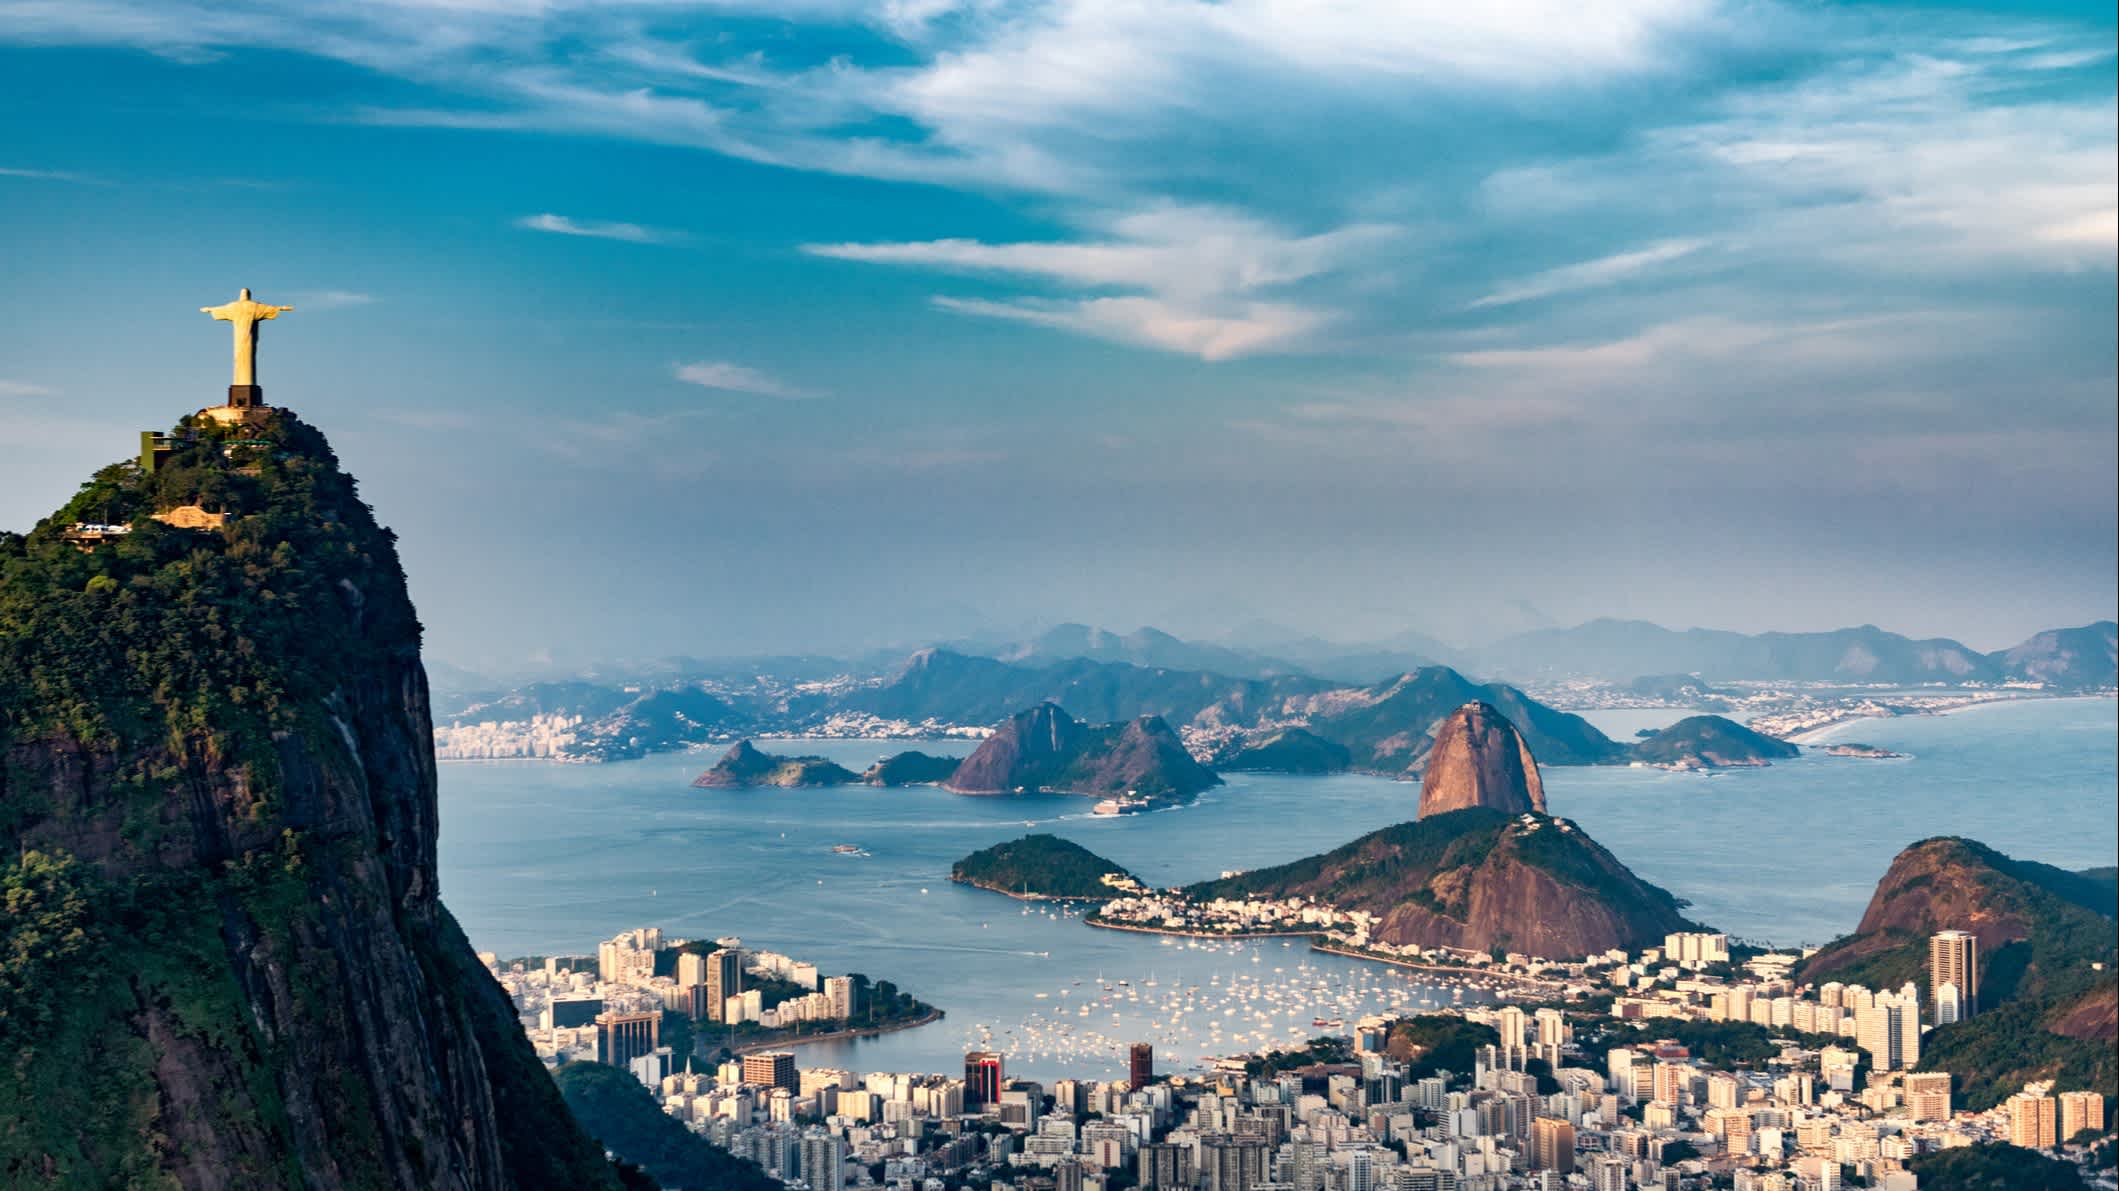 Vue aérienne de Rio De Janeiro. La montagne Corcovado avec la statue du Christ Rédempteur, les zones urbaines de Botafogo, Flamengo et Centro, la montagne Sugarloaf.